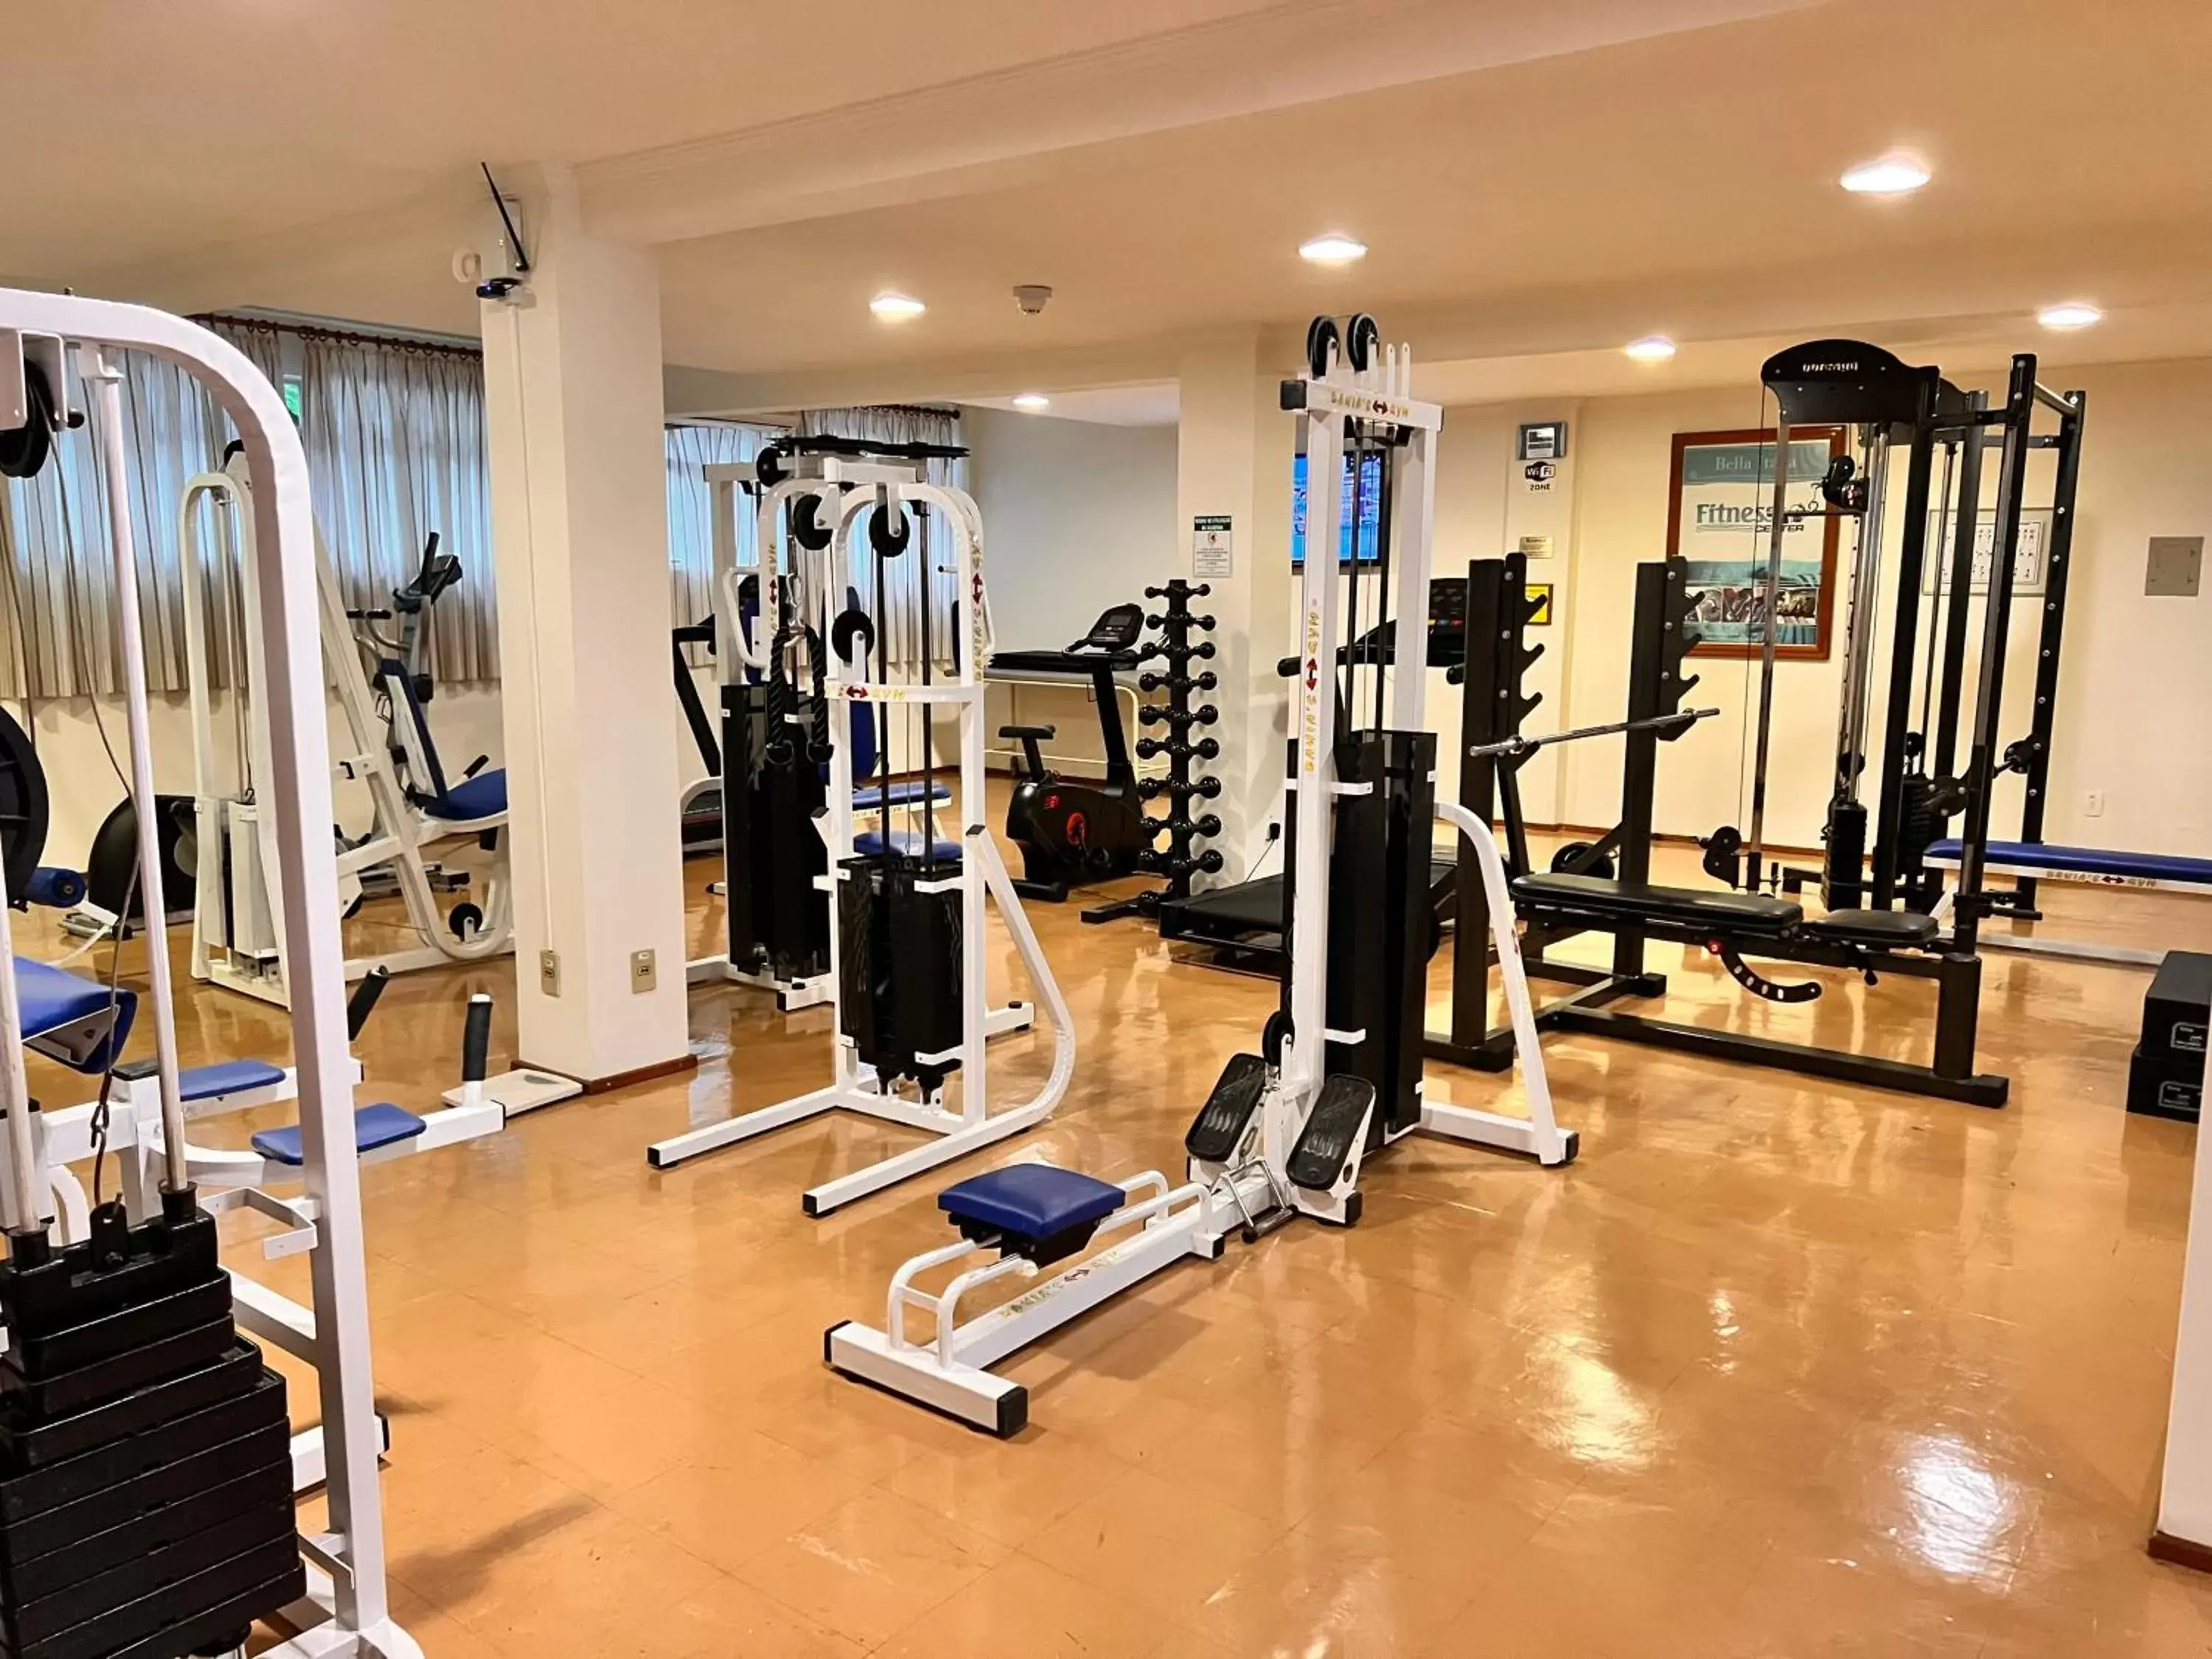 Fitness centre/facilities, Fitness Center/Facilities in Hotel Bella Italia